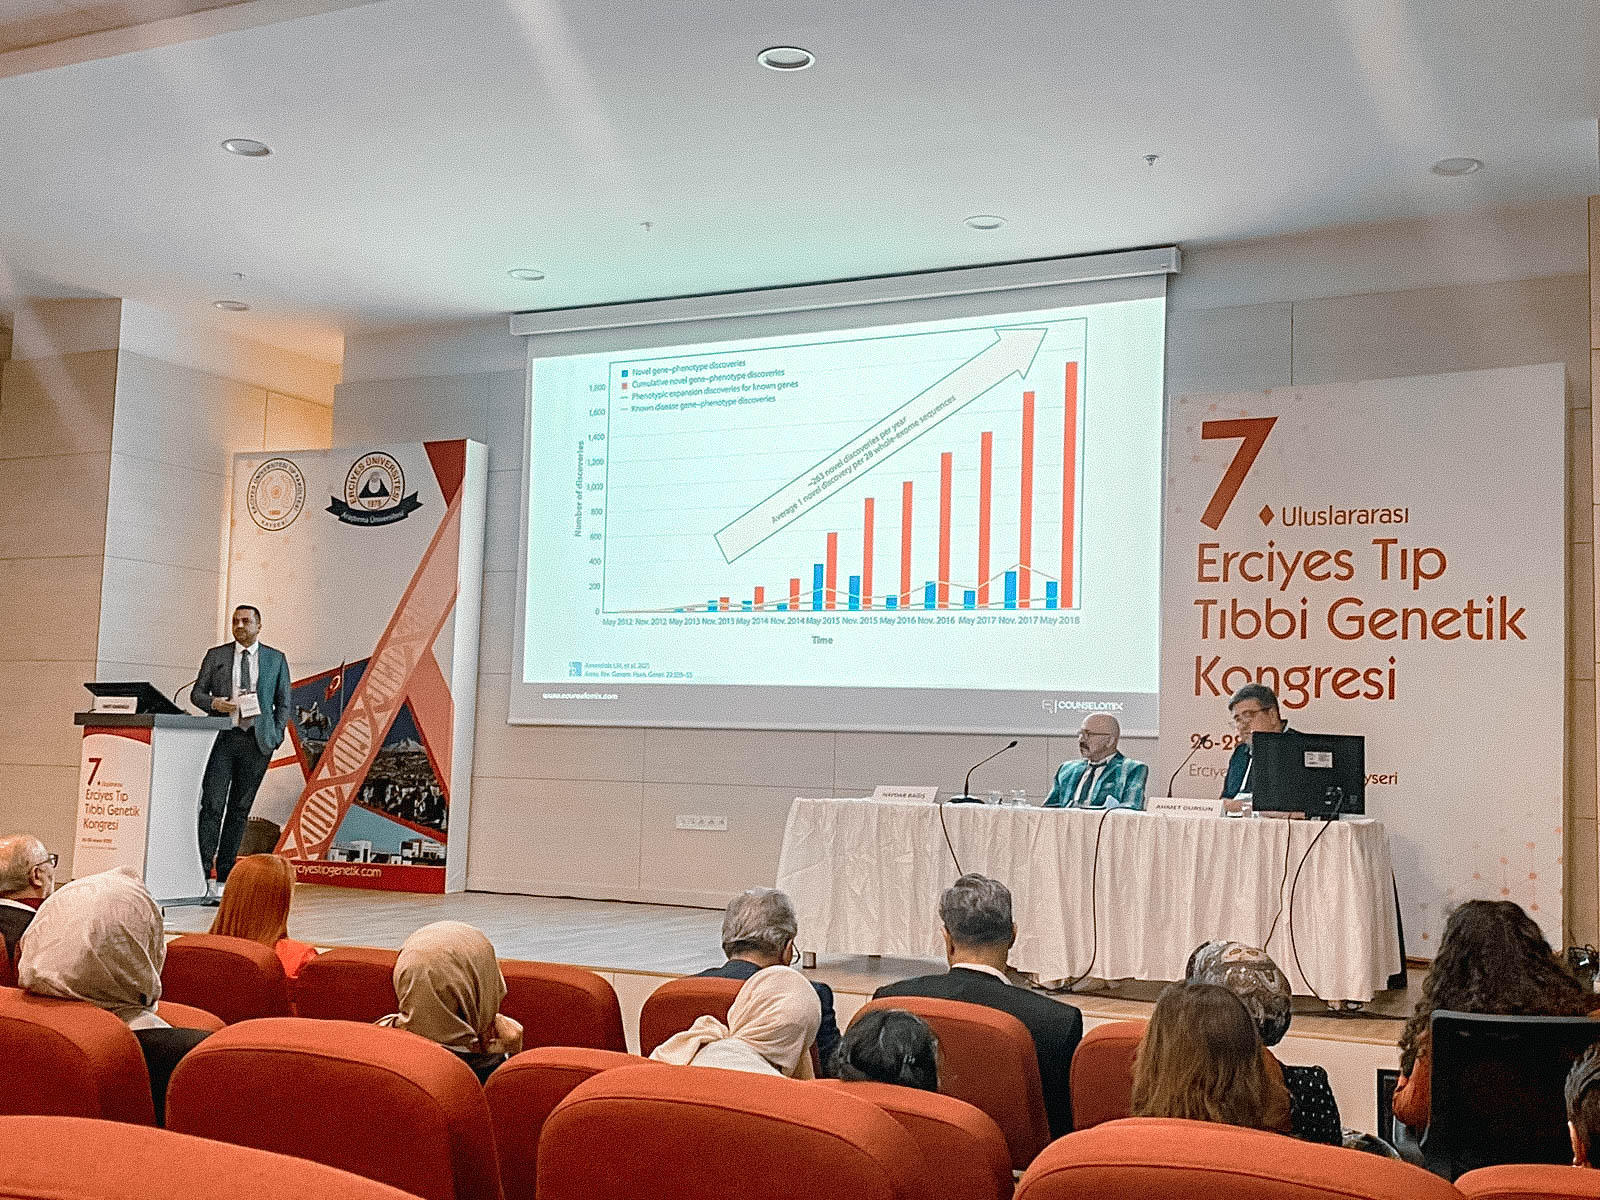 7th International Erciyes Medical Genetic Congress in Kayseri Turkey